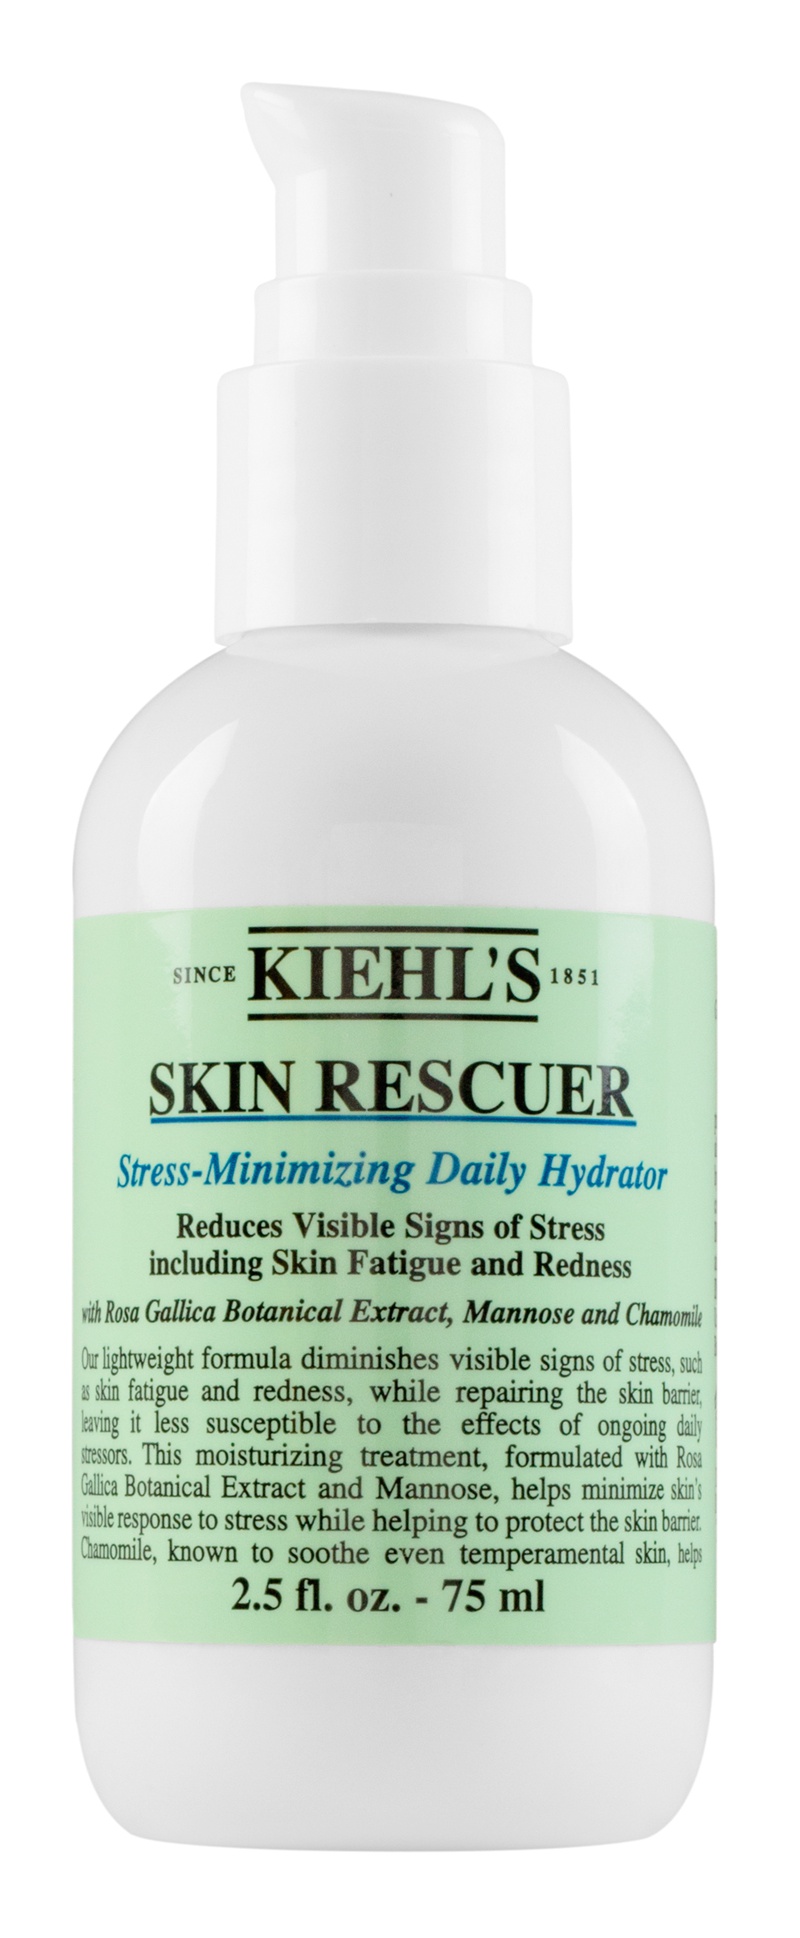 Kiehl’s Skin Rescuer